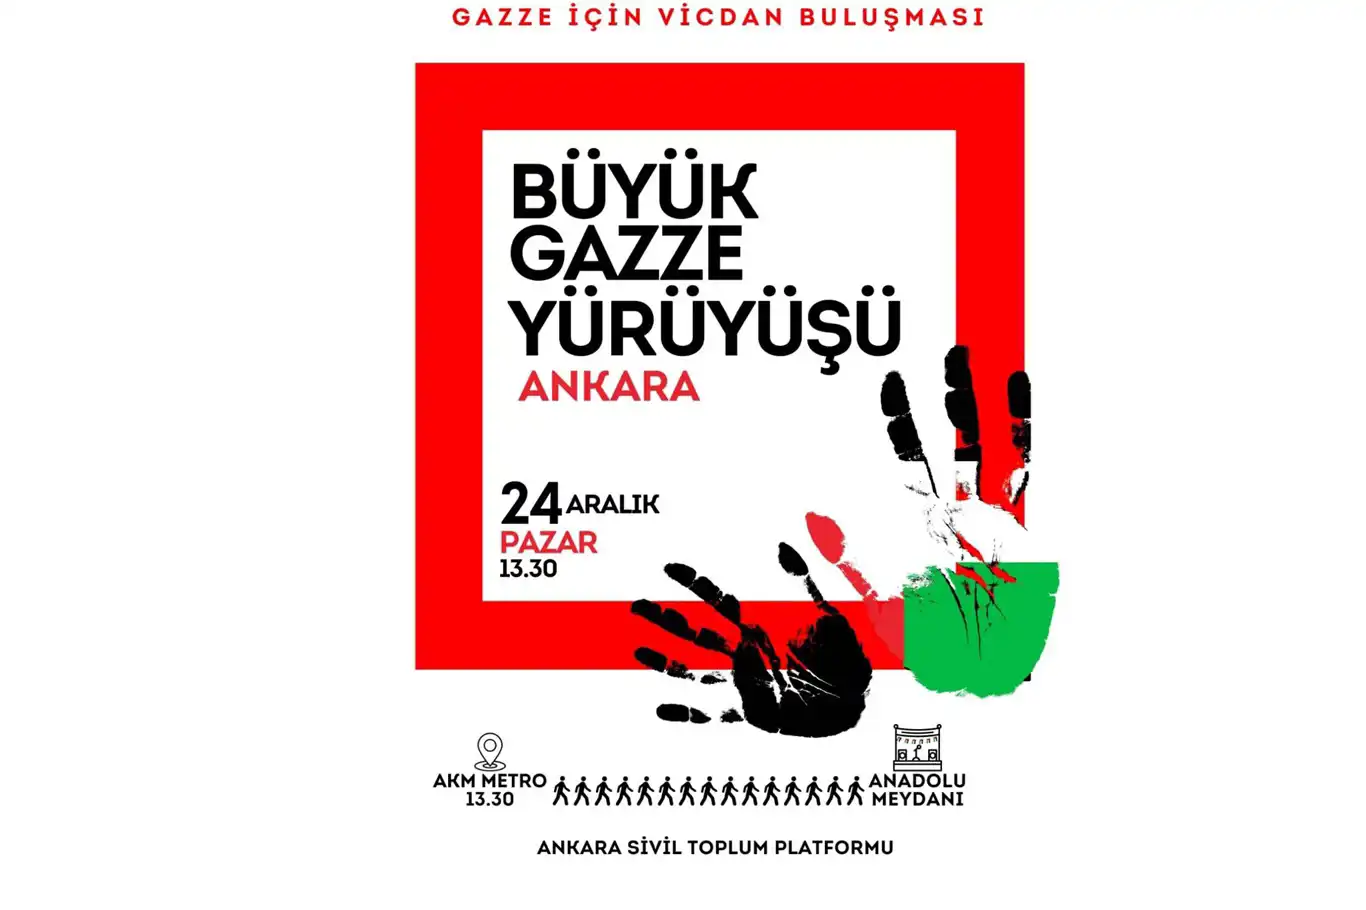 Ankara'da yapılacak olan "Büyük Gazze Yürüyüş ve Mitingine" davet